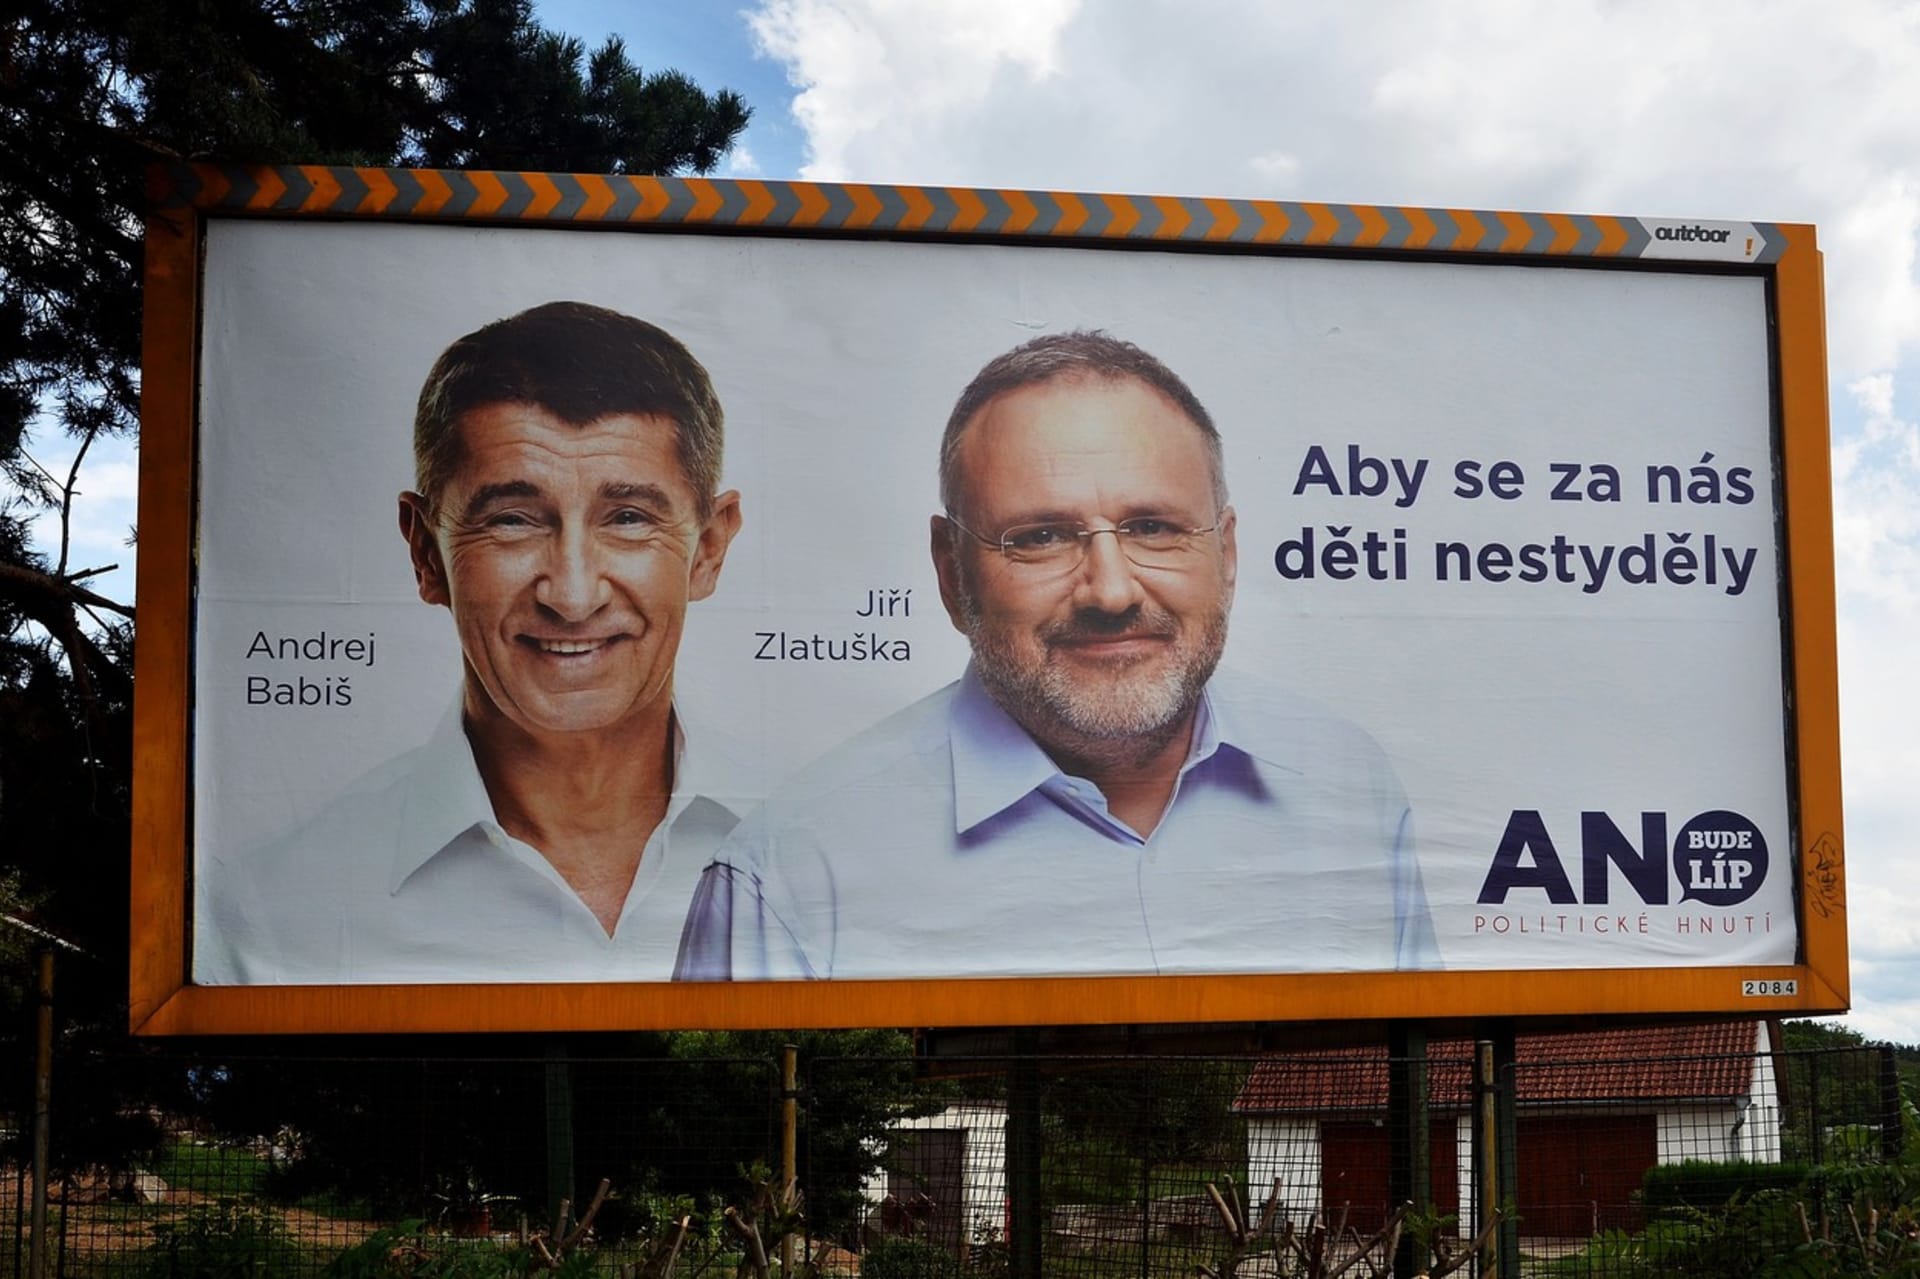 Jiří Zlatuška na billboardu s Andrejem Babišem